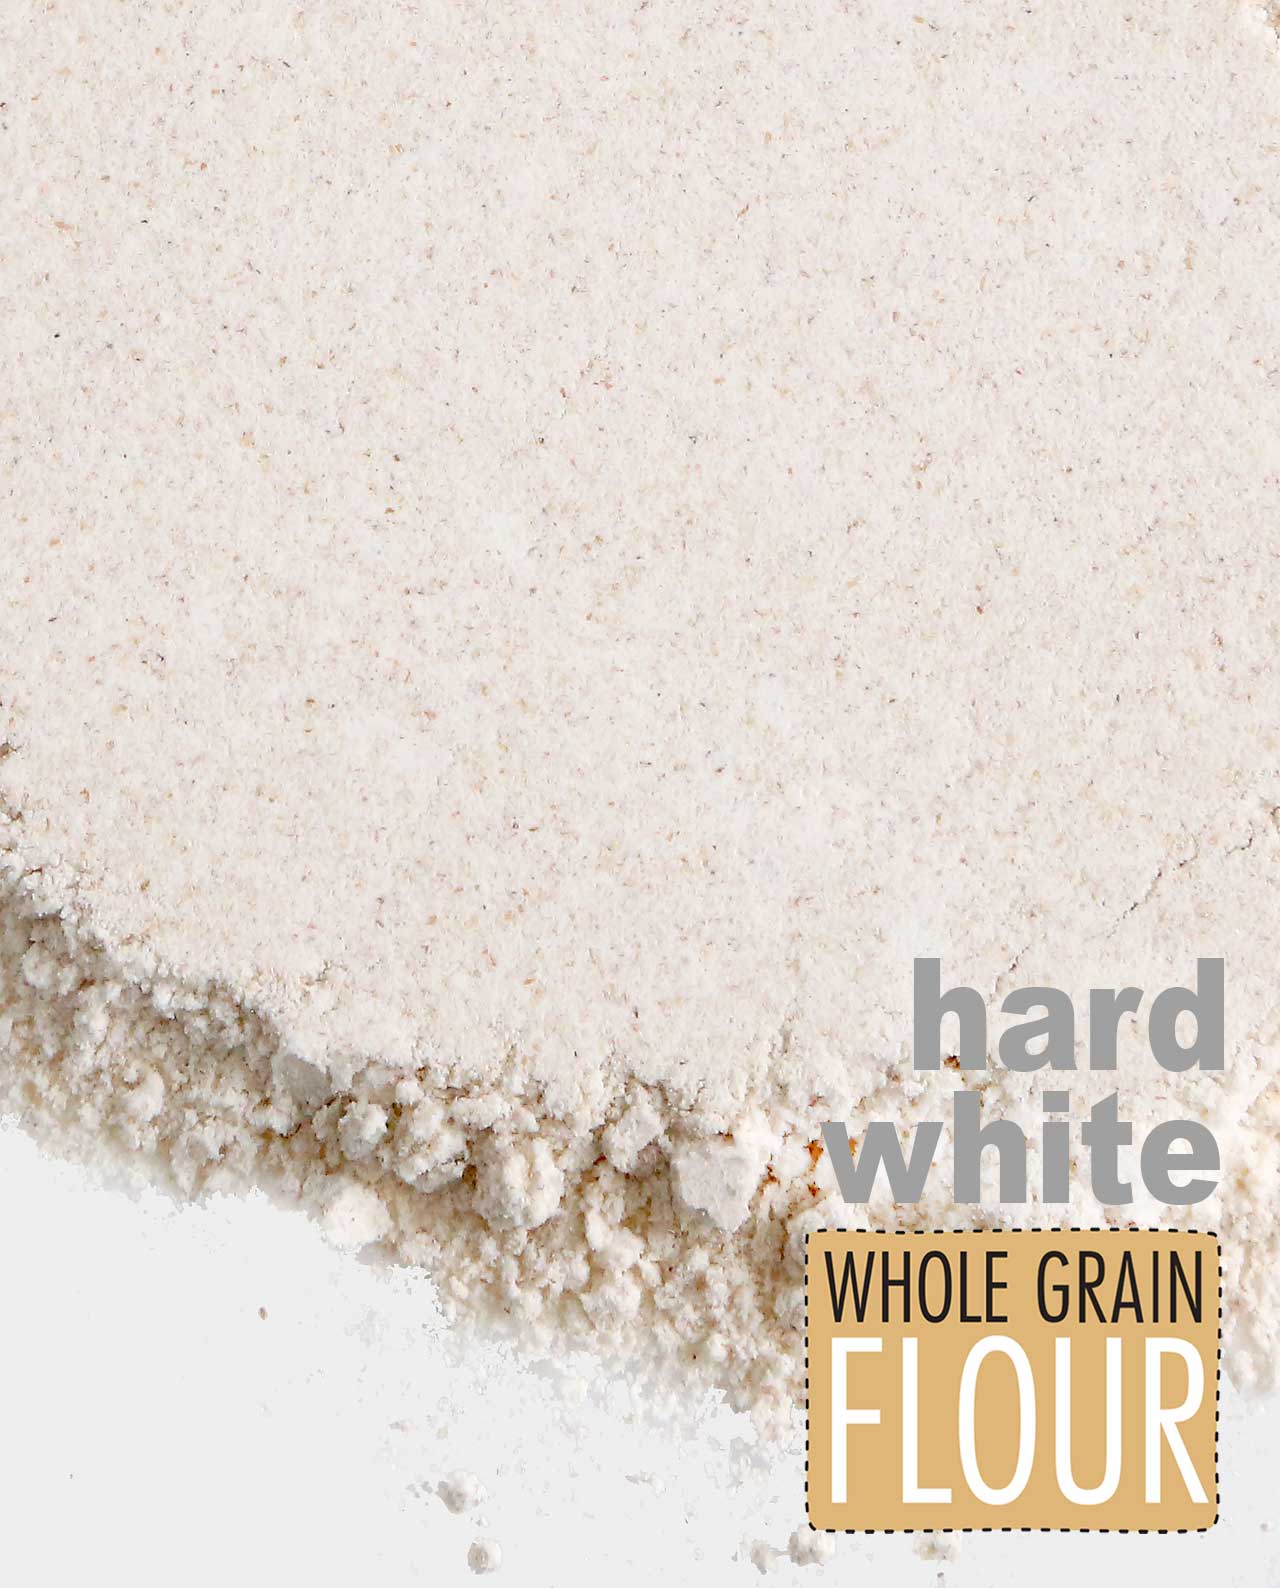 Hard White Spring Whole Grain Flour